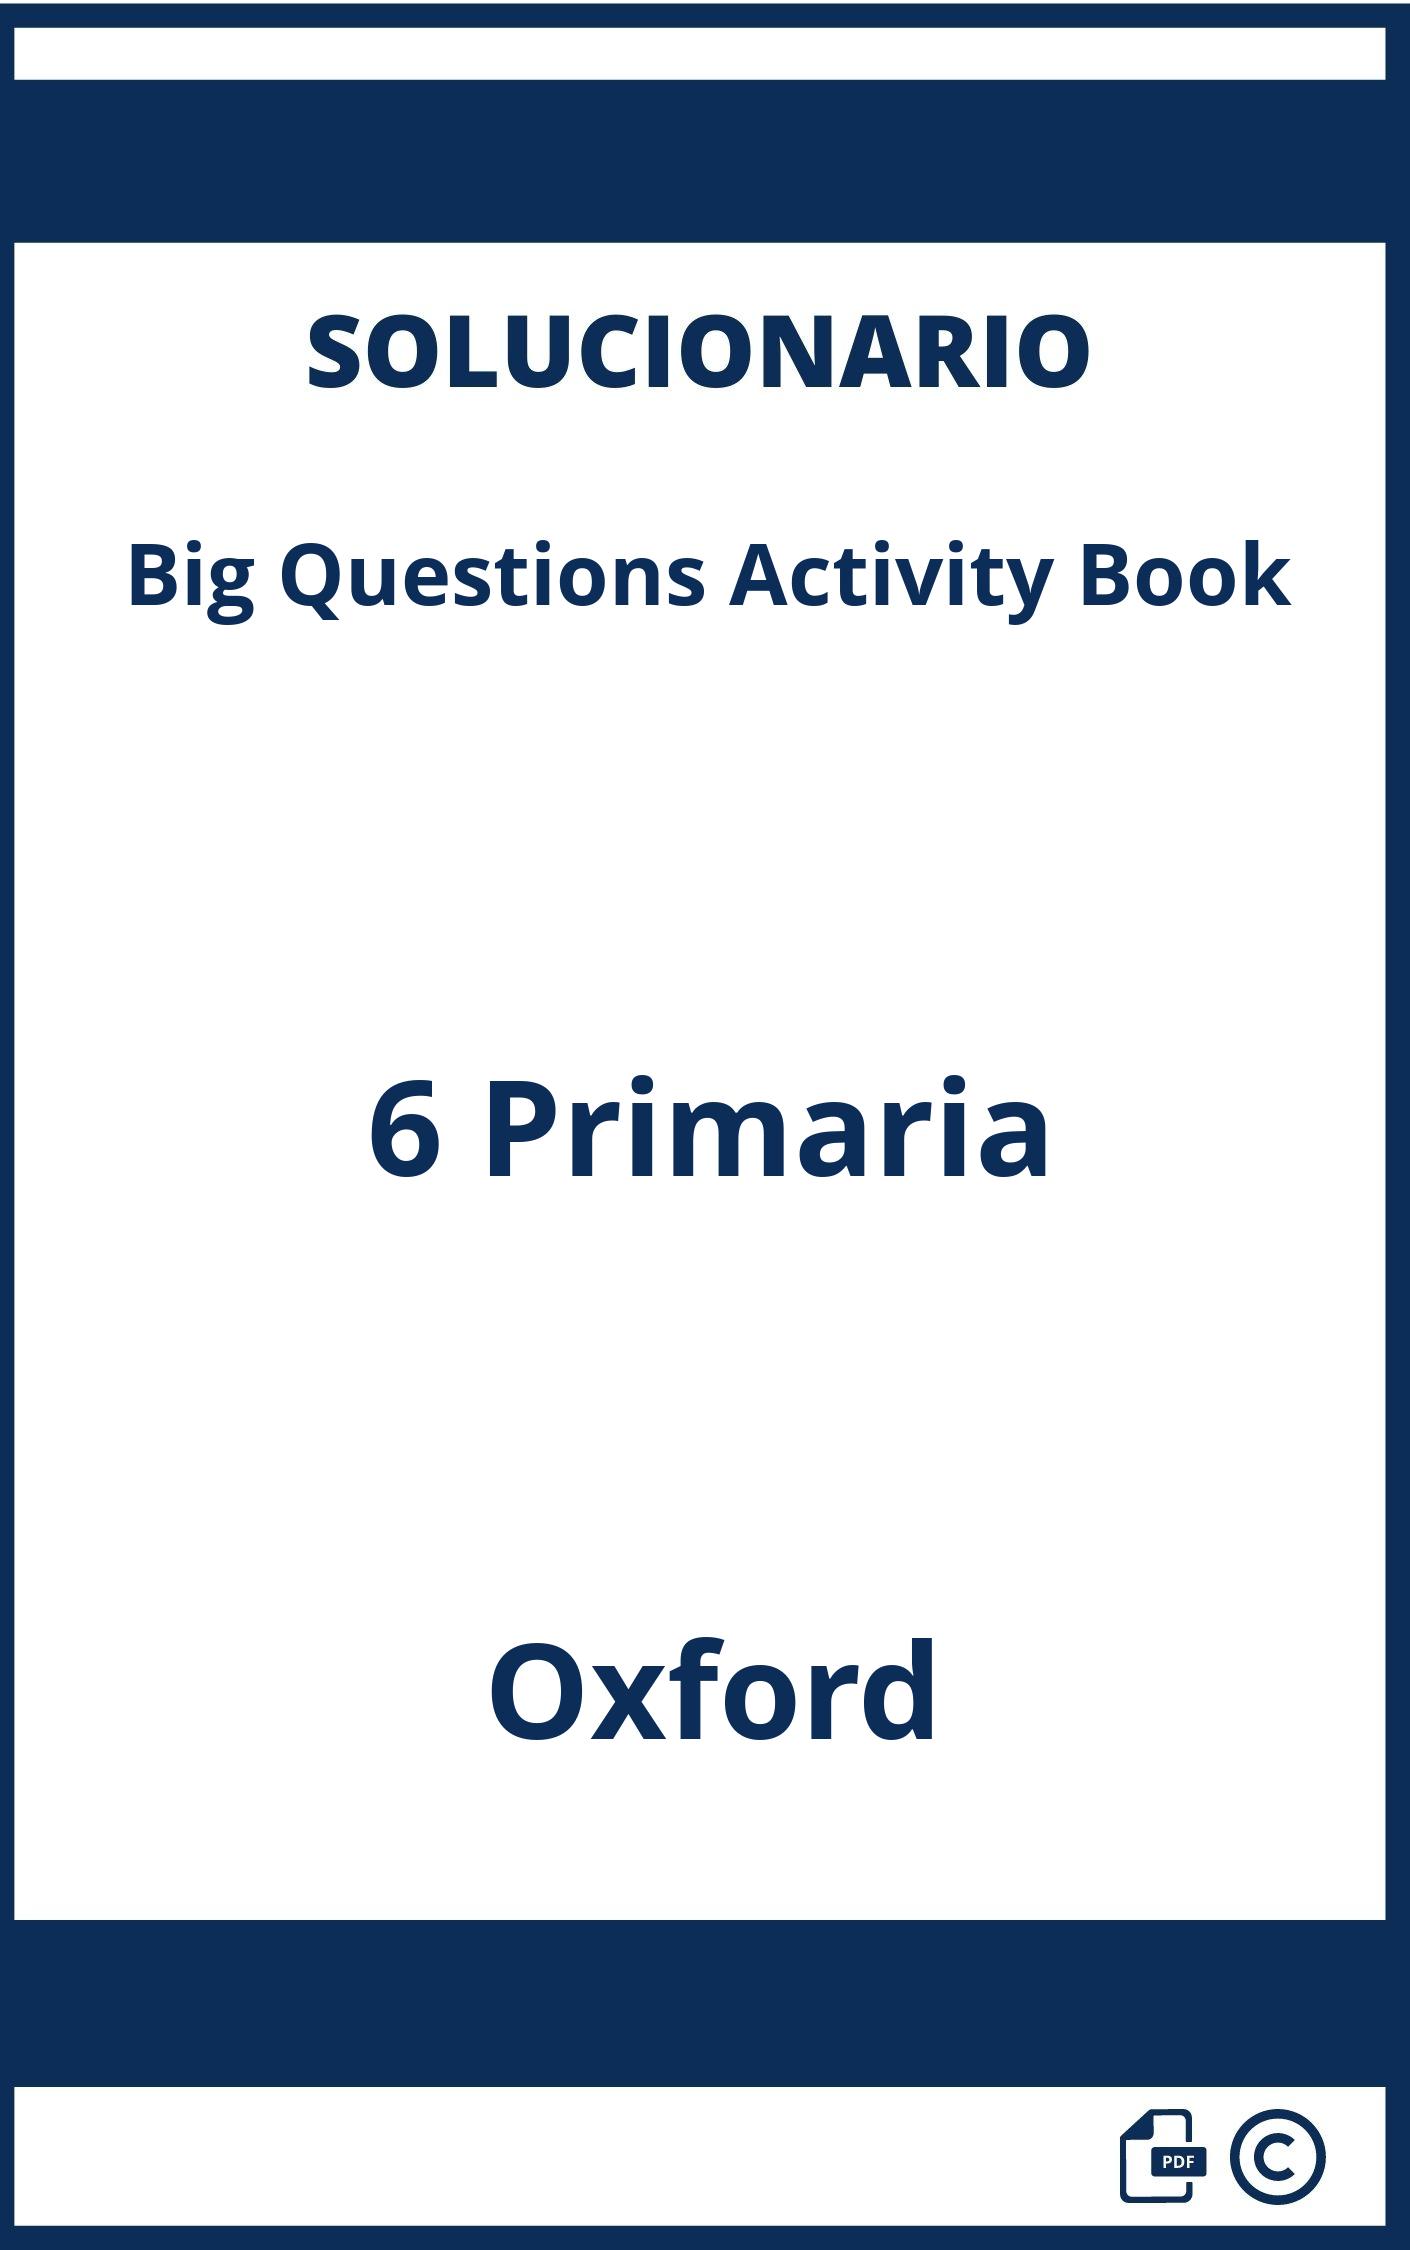 Solucionario Big Questions Activity Book 6 Primaria Oxford